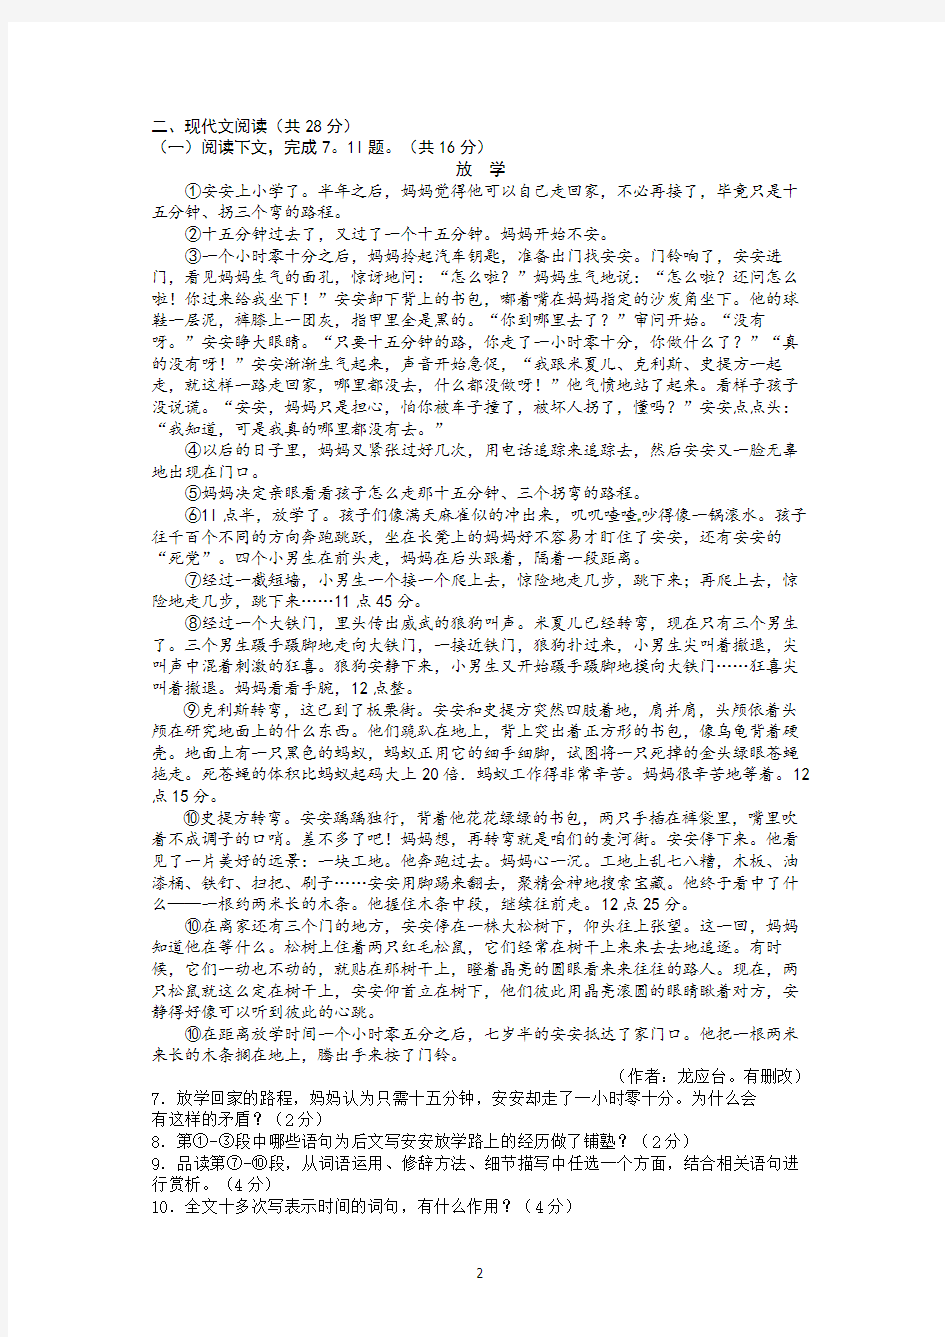 2013年河南中考语文试卷及答案